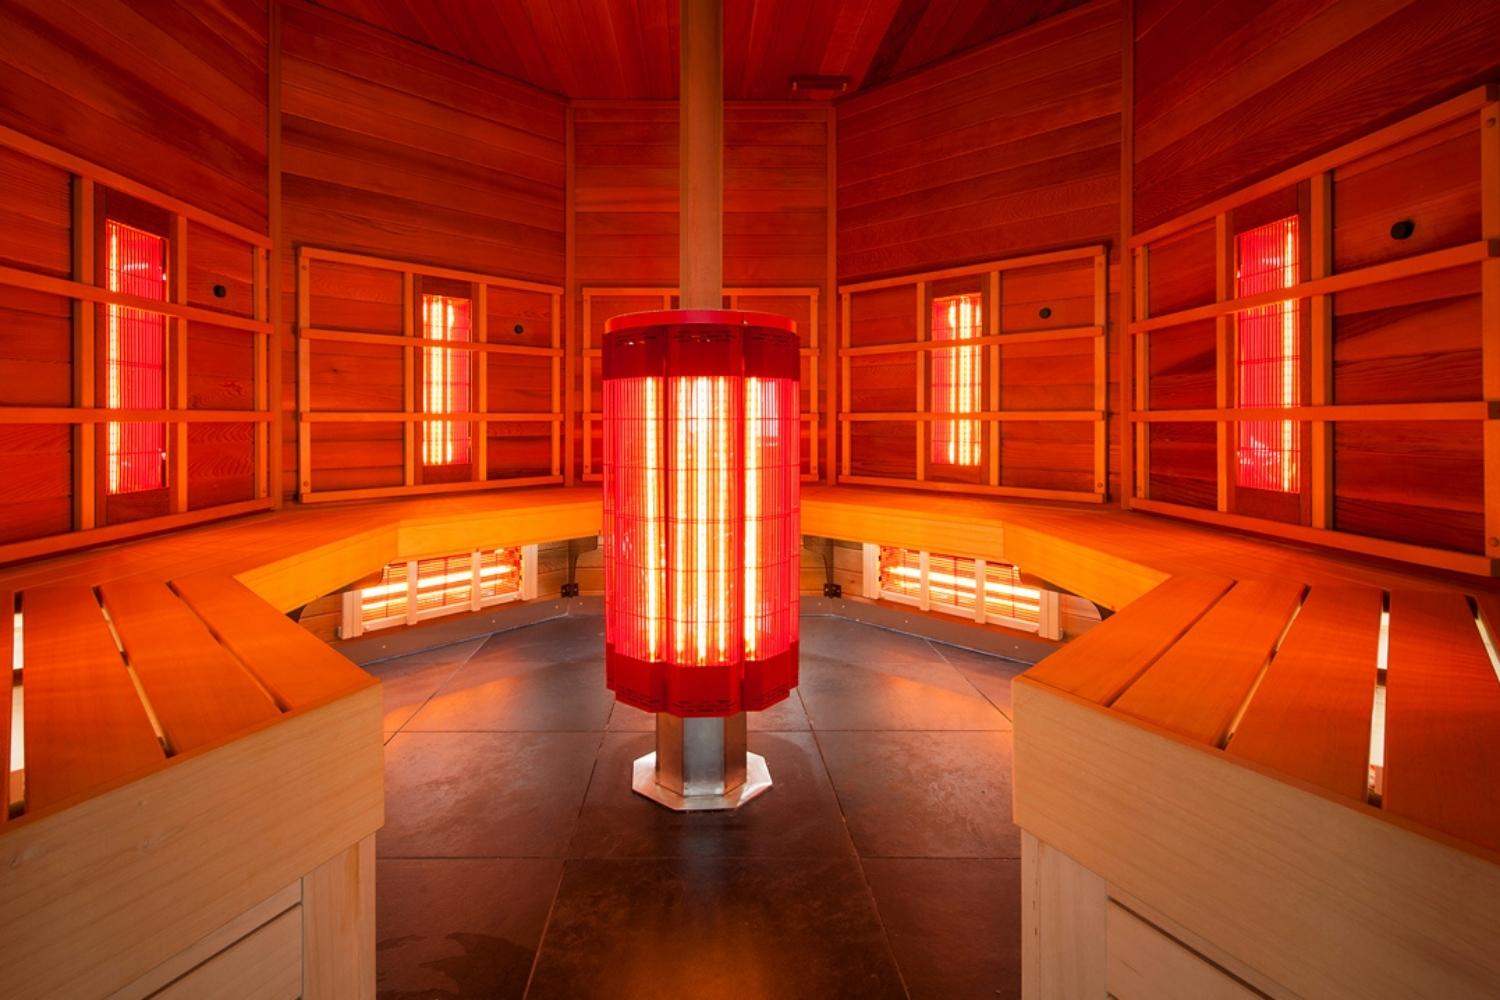 Hoe heet worden infrarood sauna's in vergelijking met traditionele sauna's